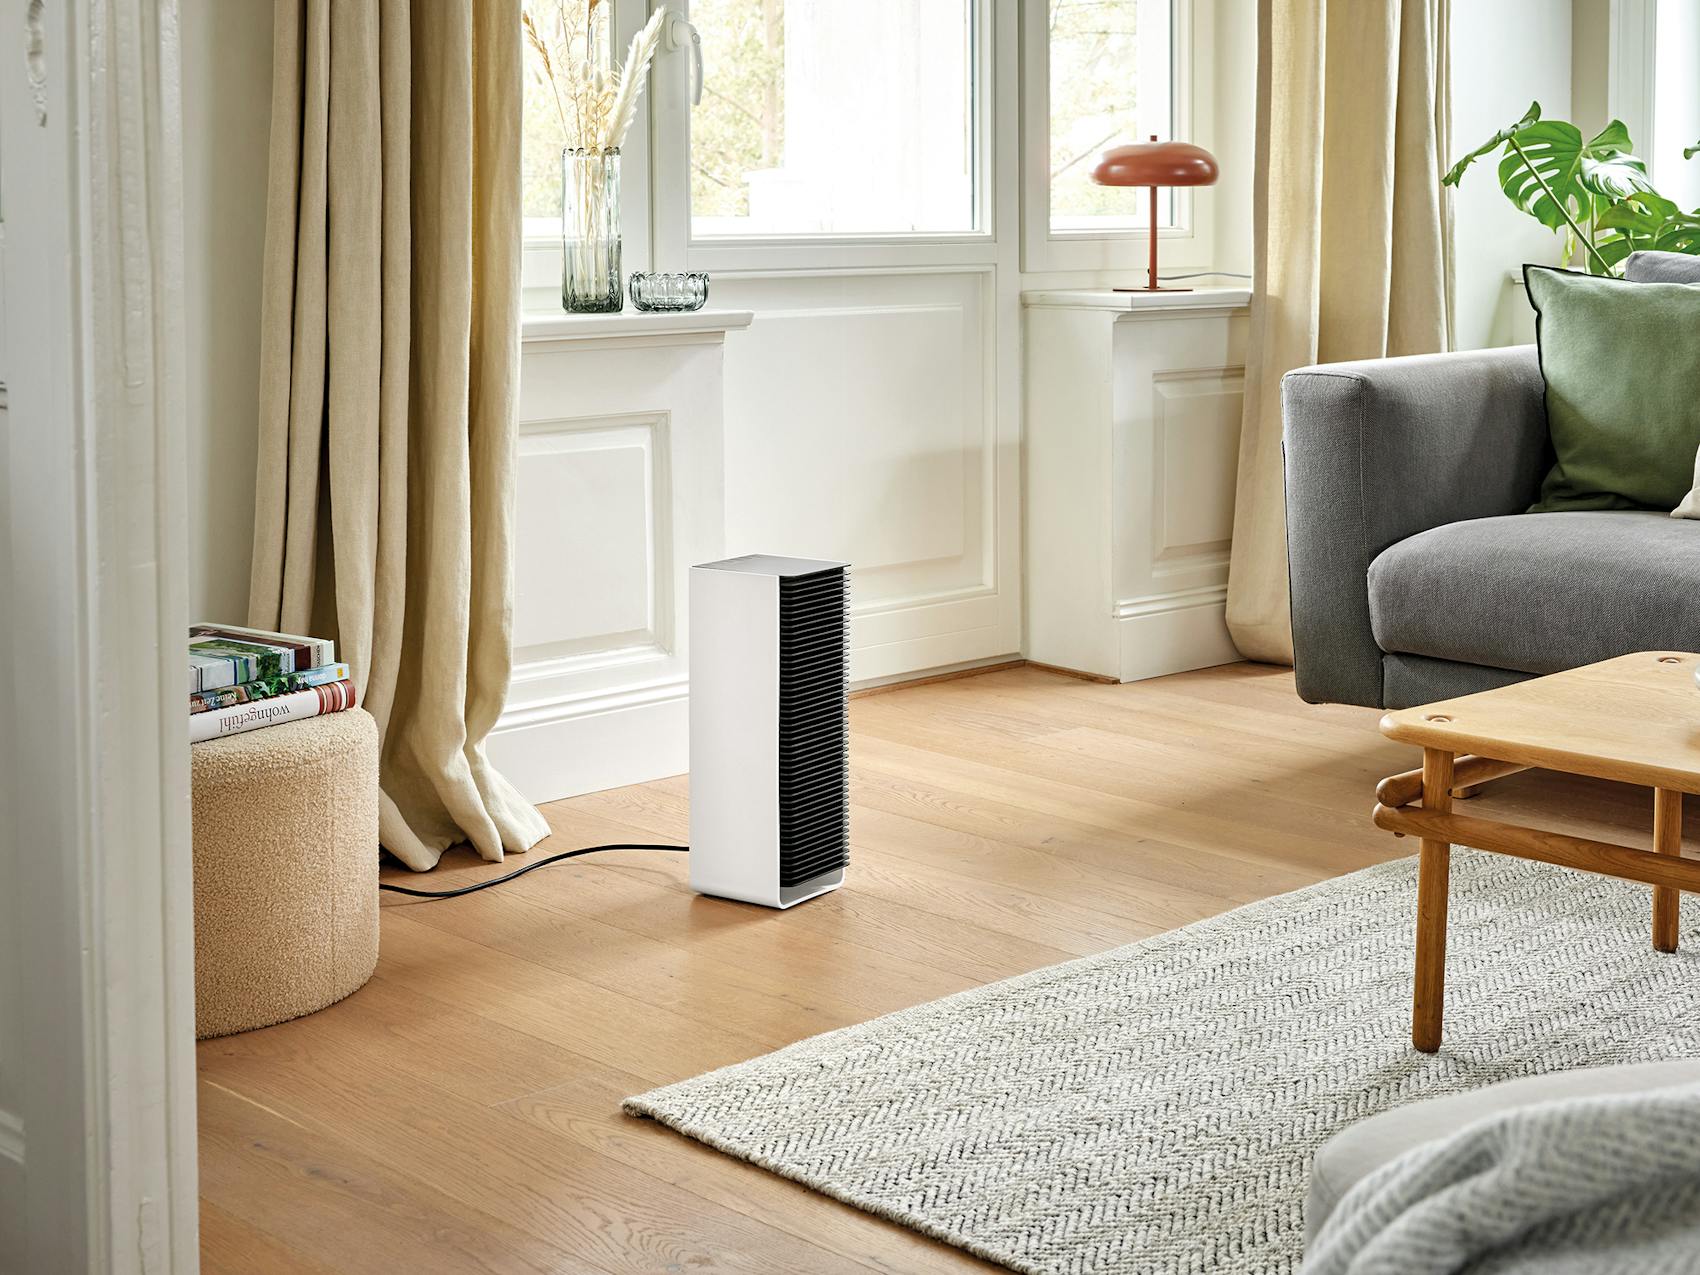 Sam heater from Stadler Form in a living room